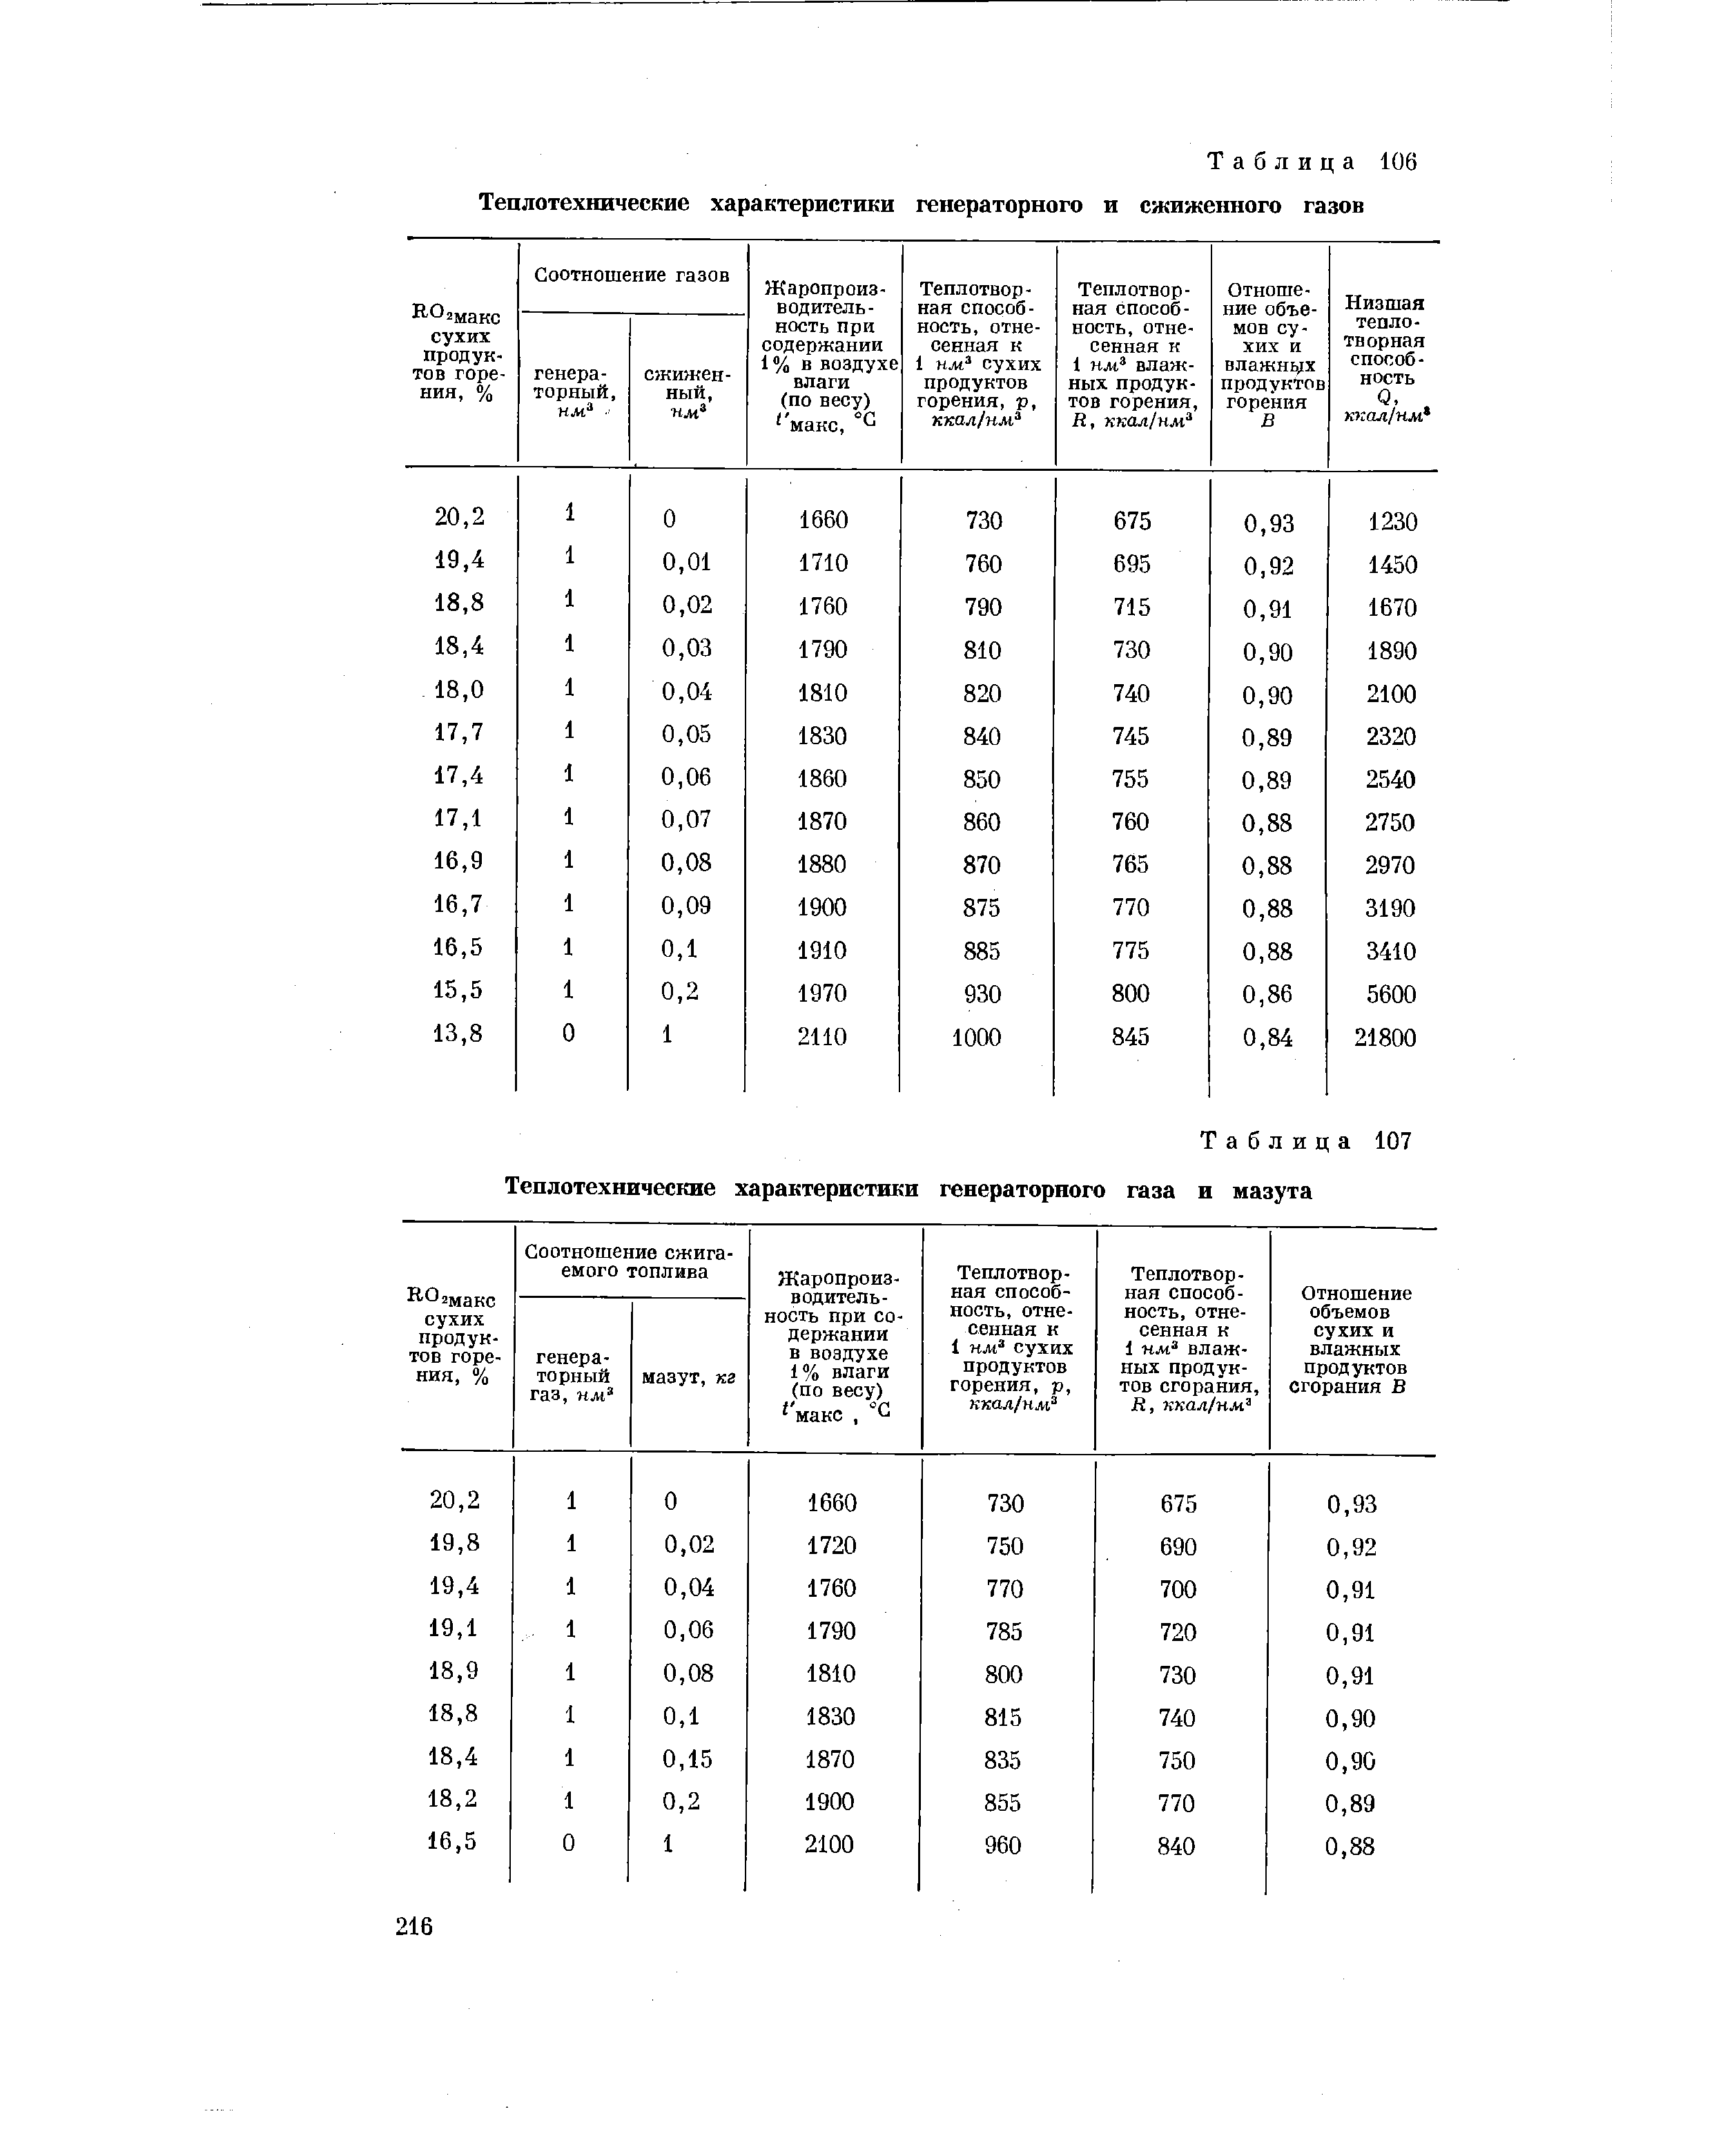 Таблица 107 Теплотехнические характеристики генераторного газа и мазута
